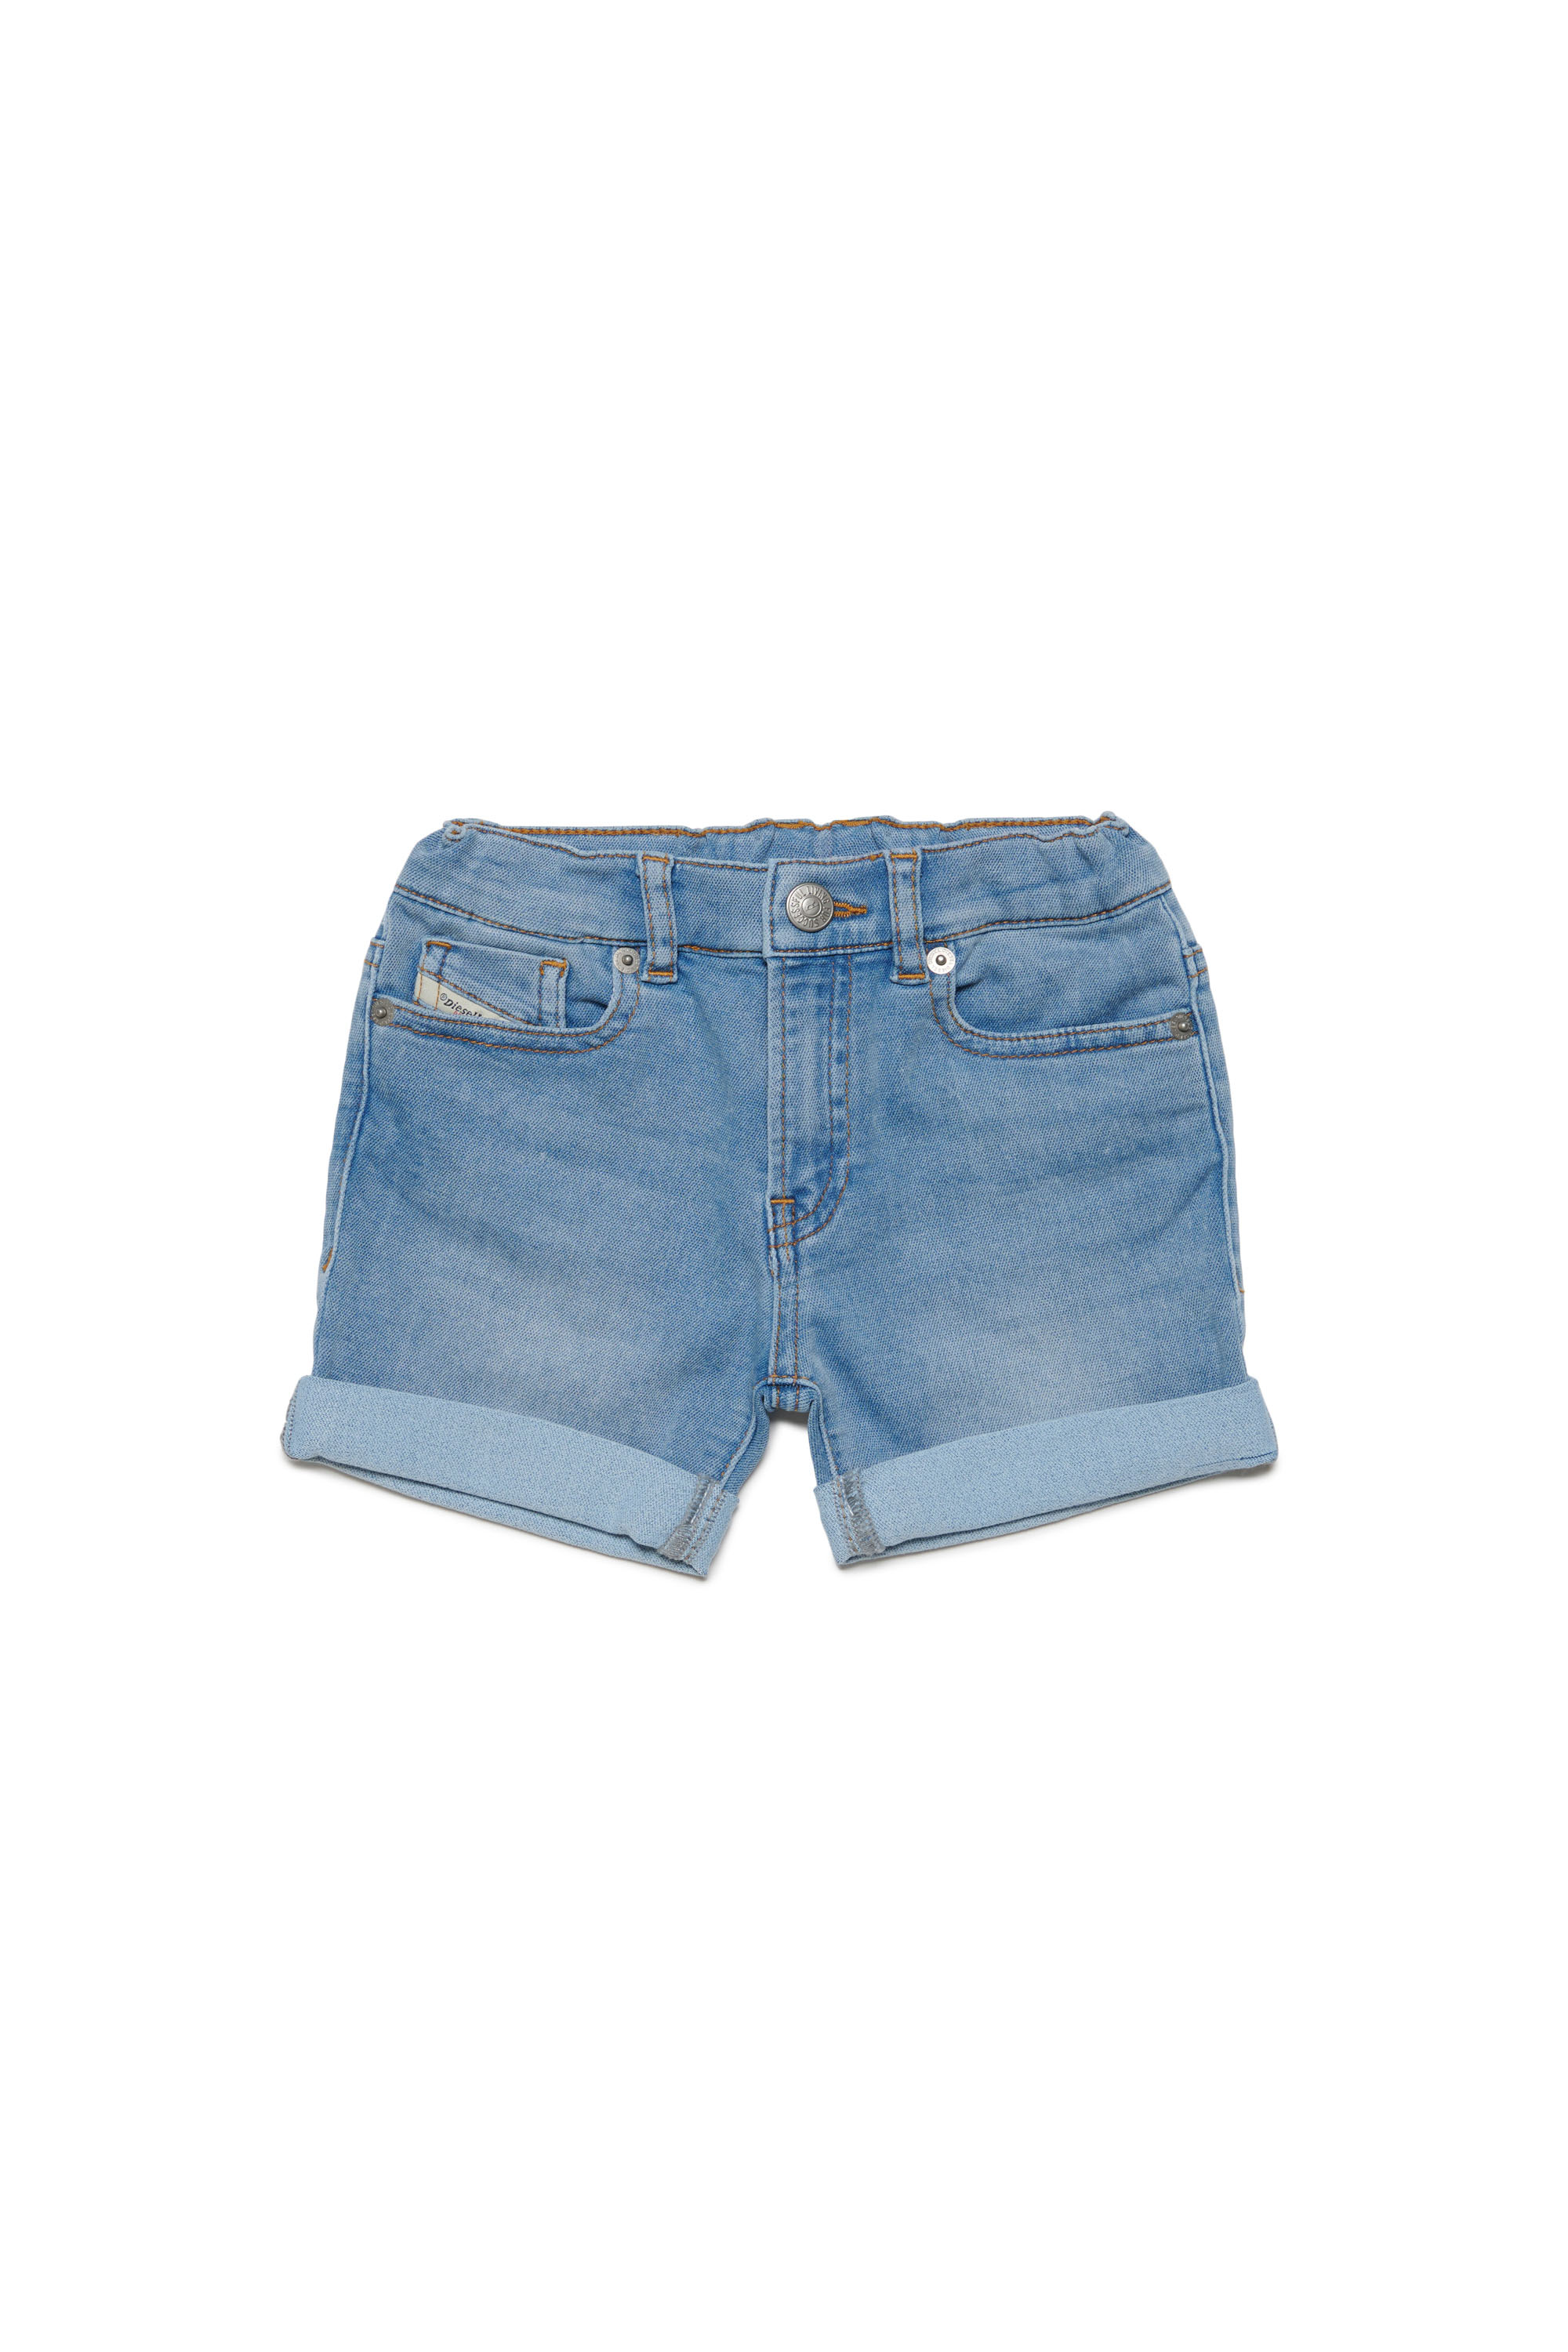 Diesel - Pantalones cortos en tejido Jogg Jeans doblados hacia arriba - Shorts - Unisex - Azul marino